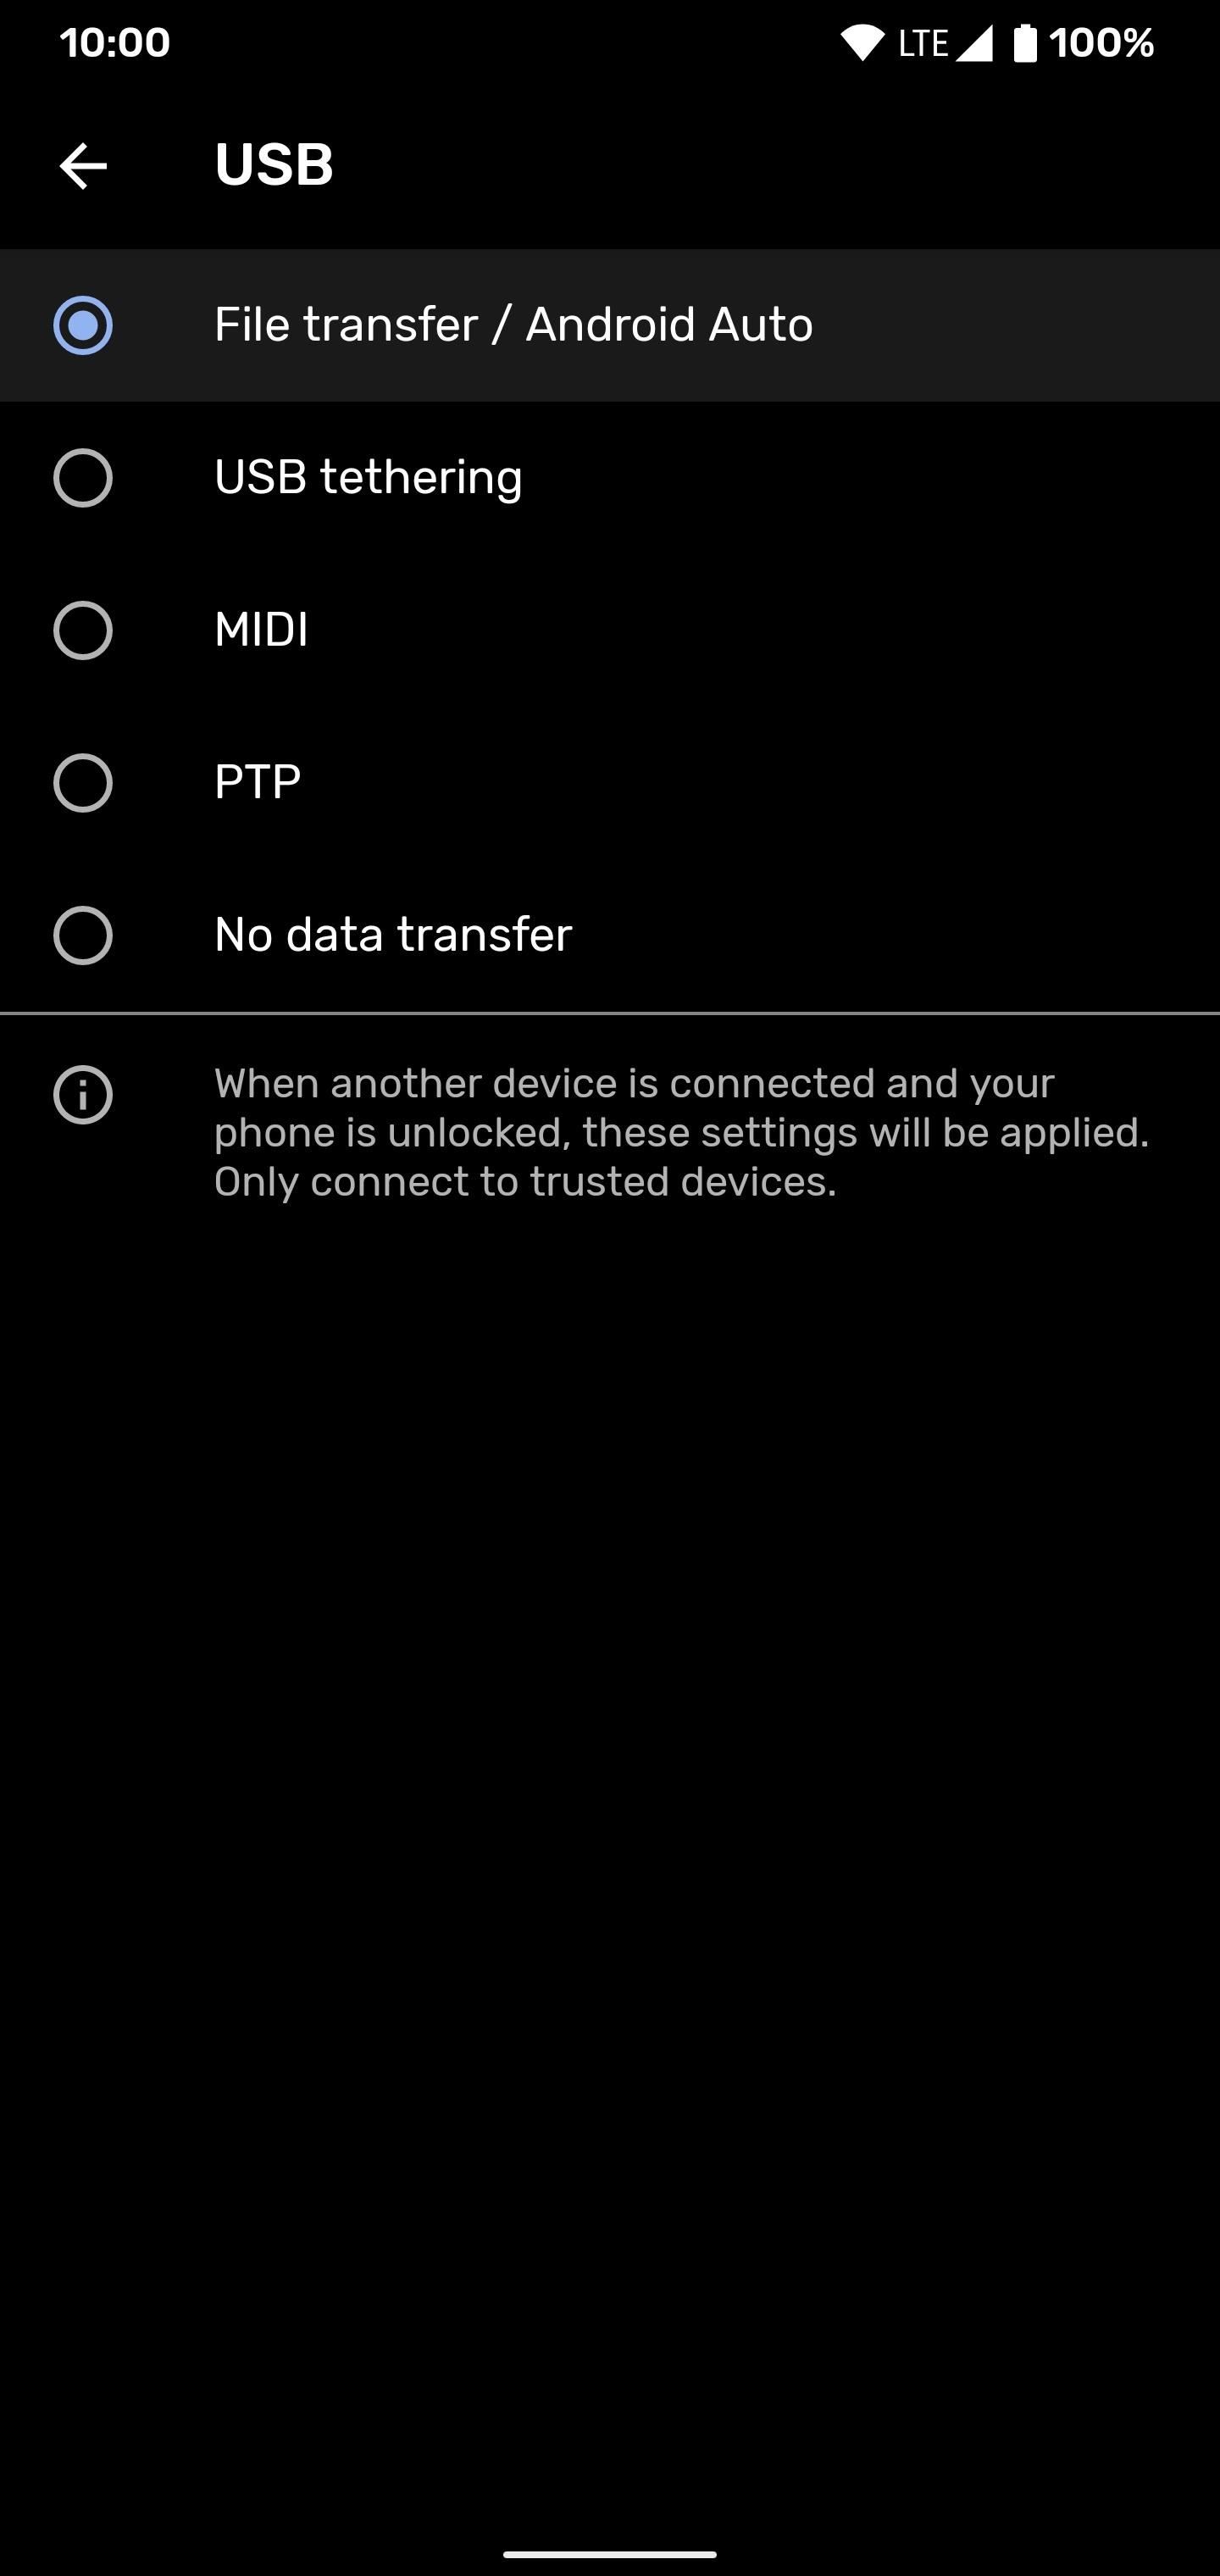 Đặt kết nối USB trên điện thoại Android của bạn mặc định sang chế độ truyền tệp